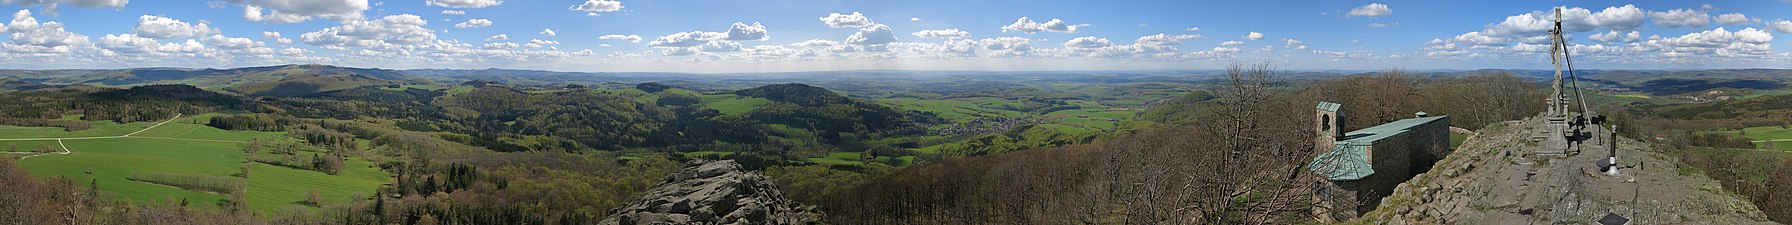 Panorama vom Gipfel der Milseburg